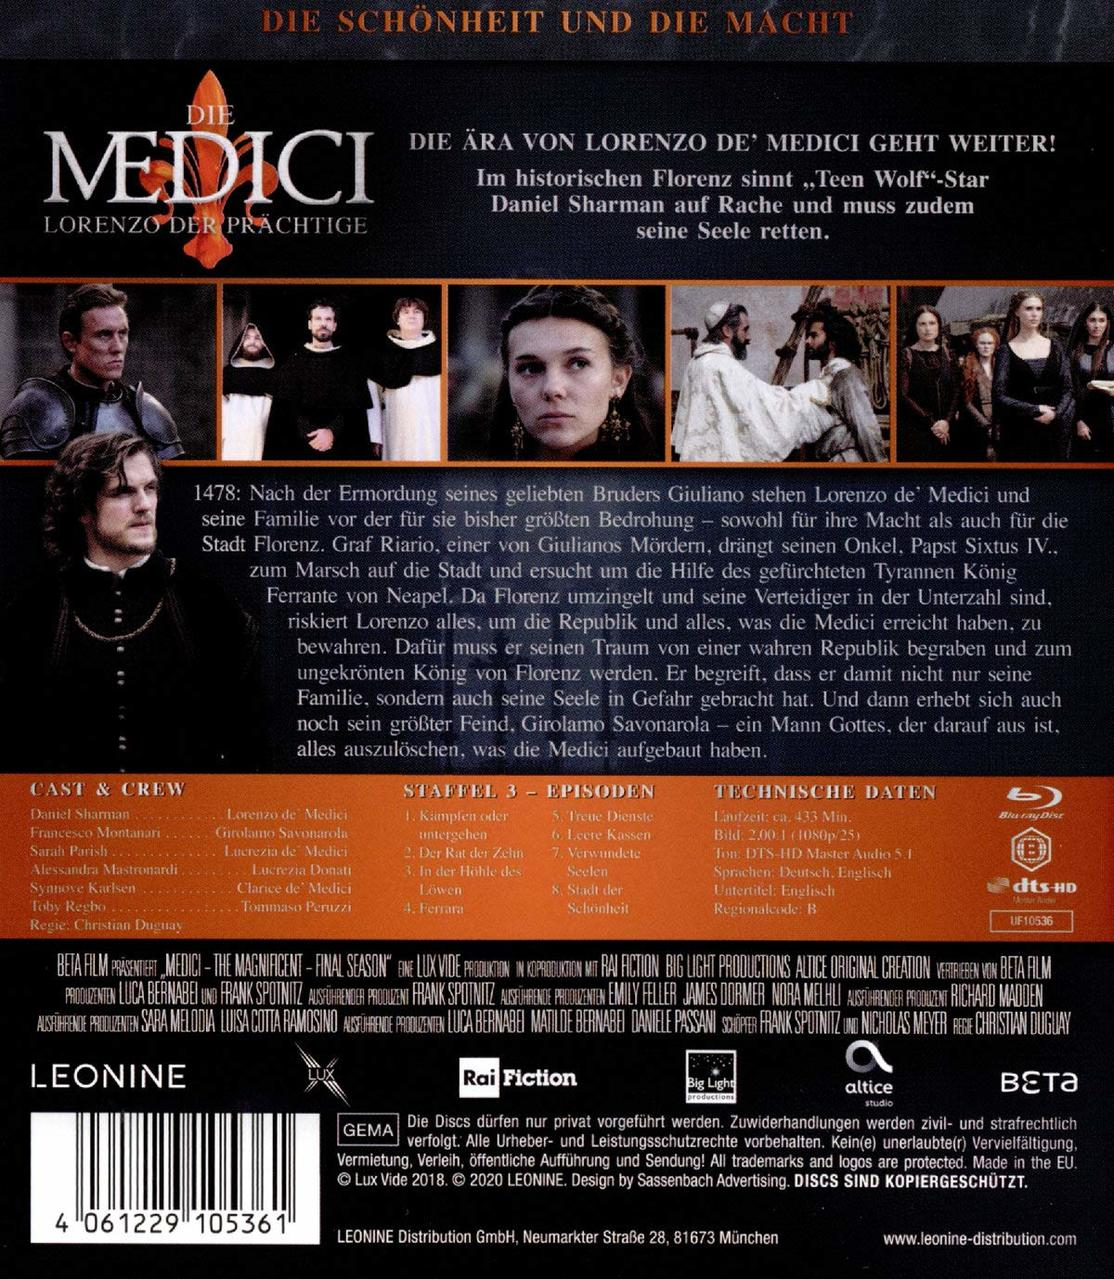 Die Medici: Prächtige Blu-ray Staffel Lorenzo - der 3